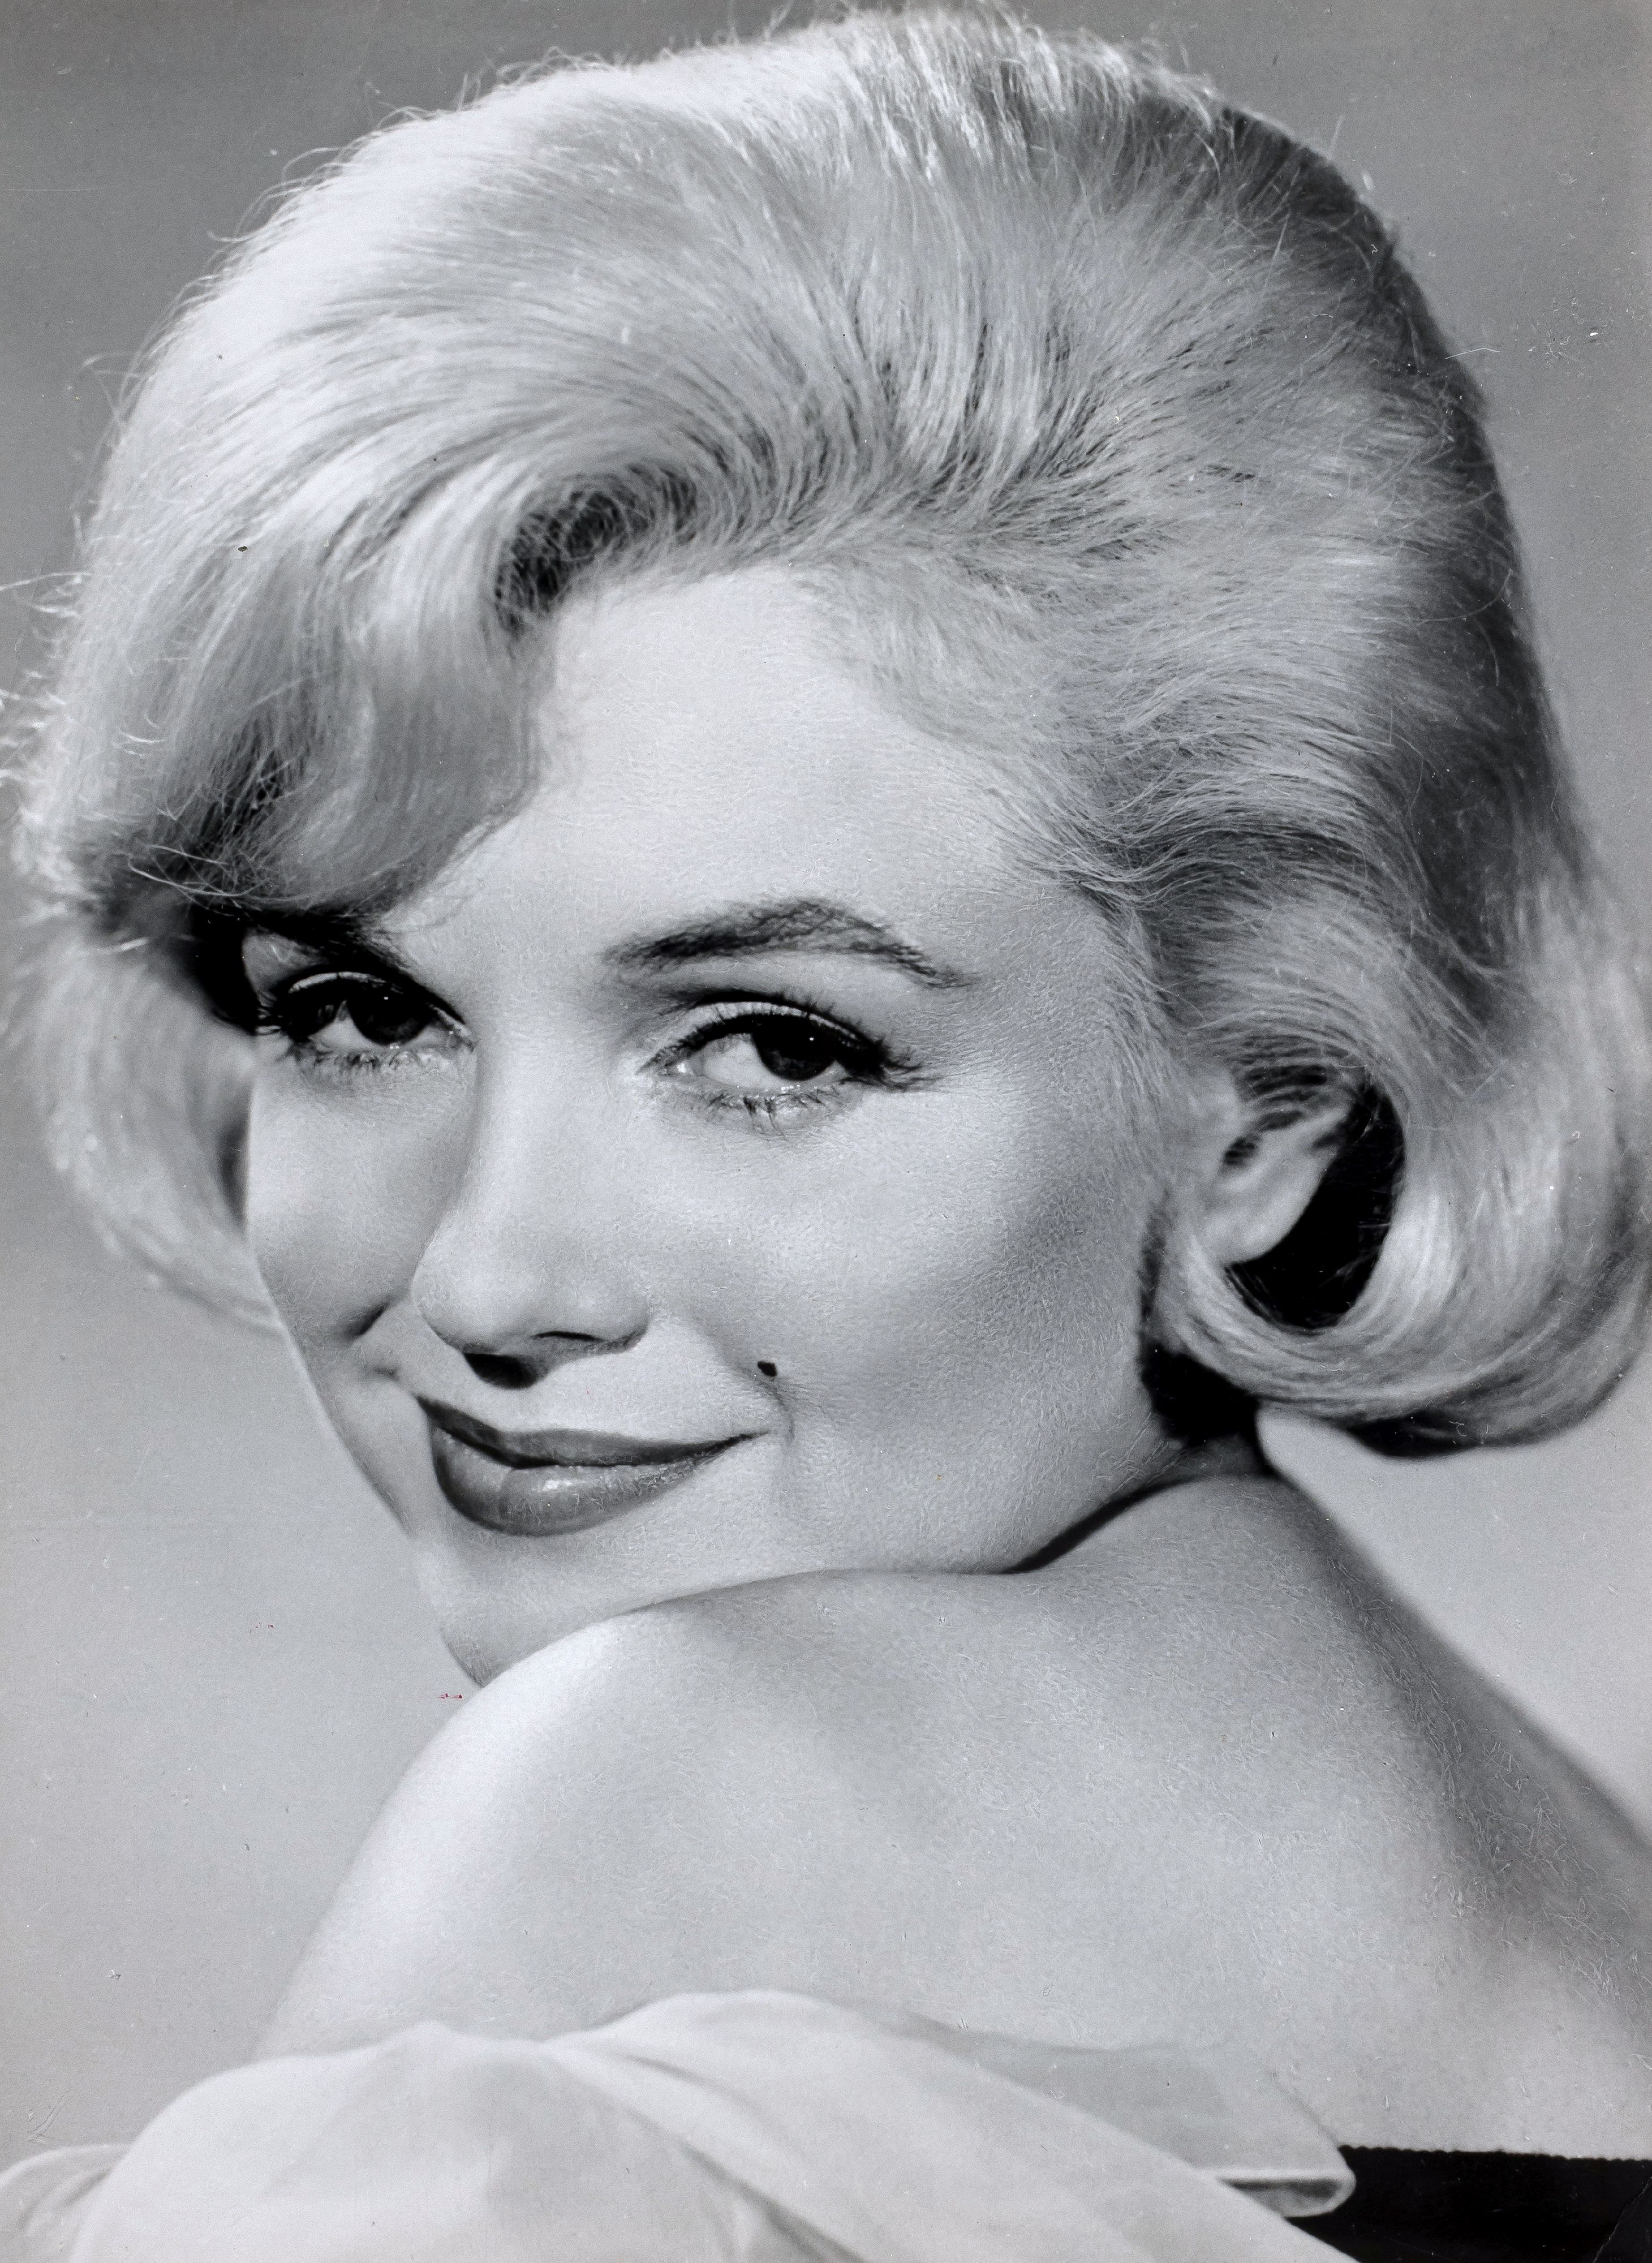 FOTOGRAFIE | 7 Pressefotos von Marilyn Monroe und 1 Notenblatt "Some Like It Hot" - Bild 4 aus 9